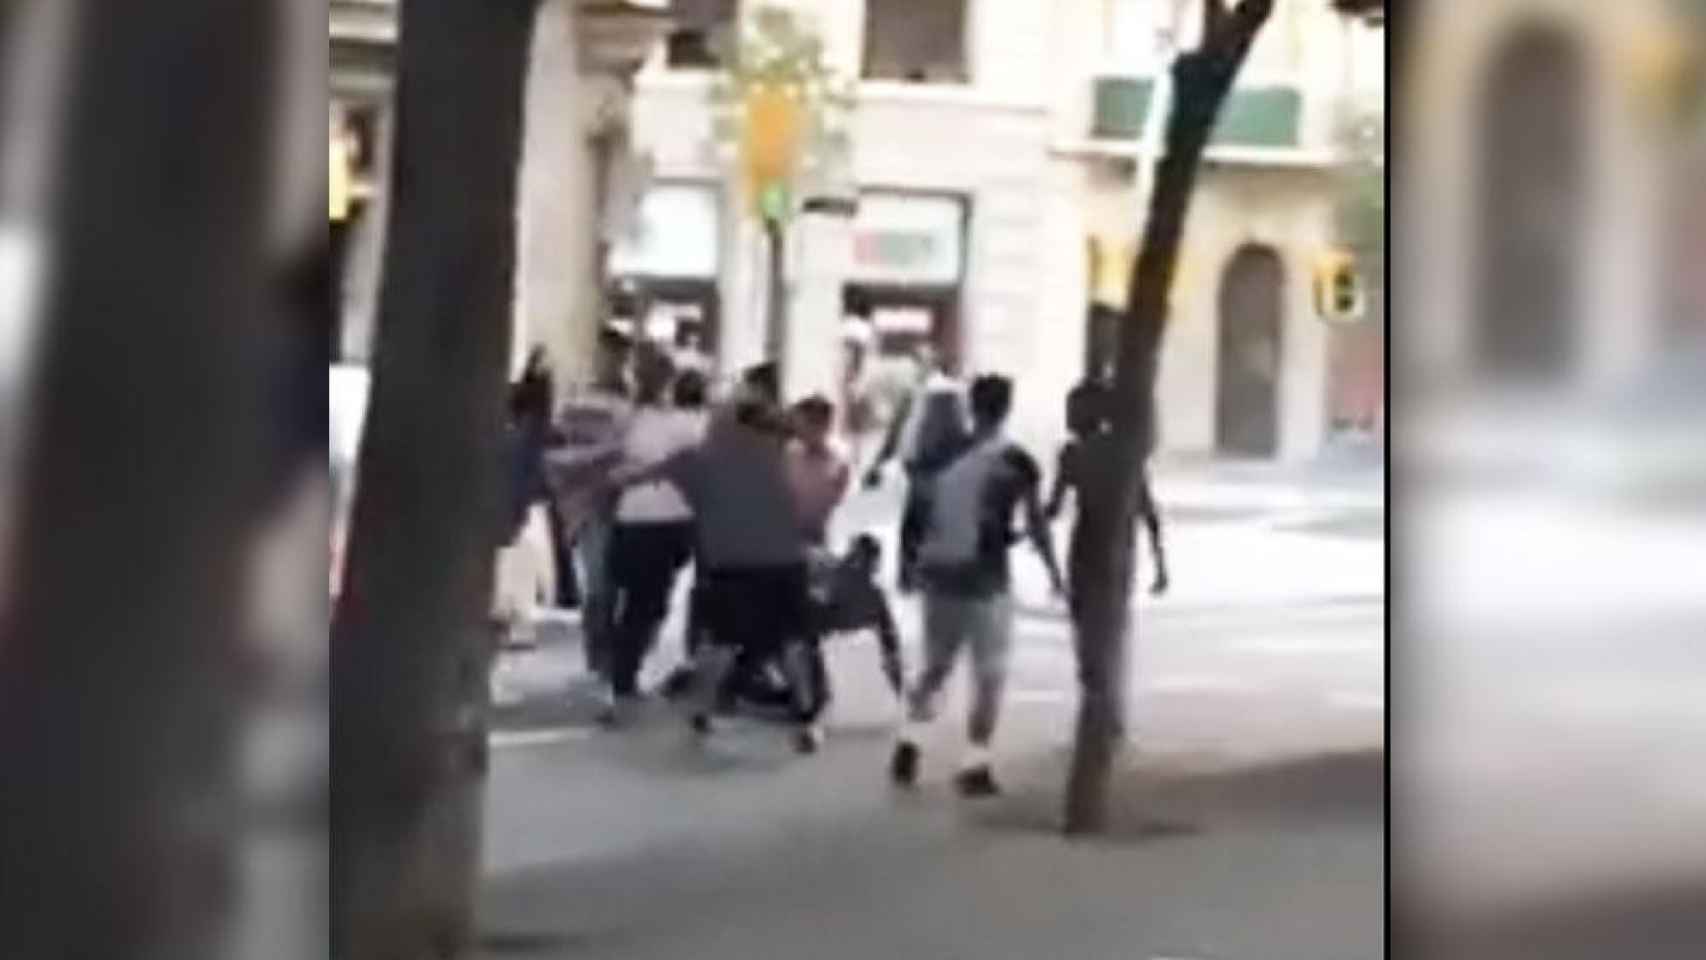 Imagen de la pelea en la zona alta de discotecas de Barcelona / CG